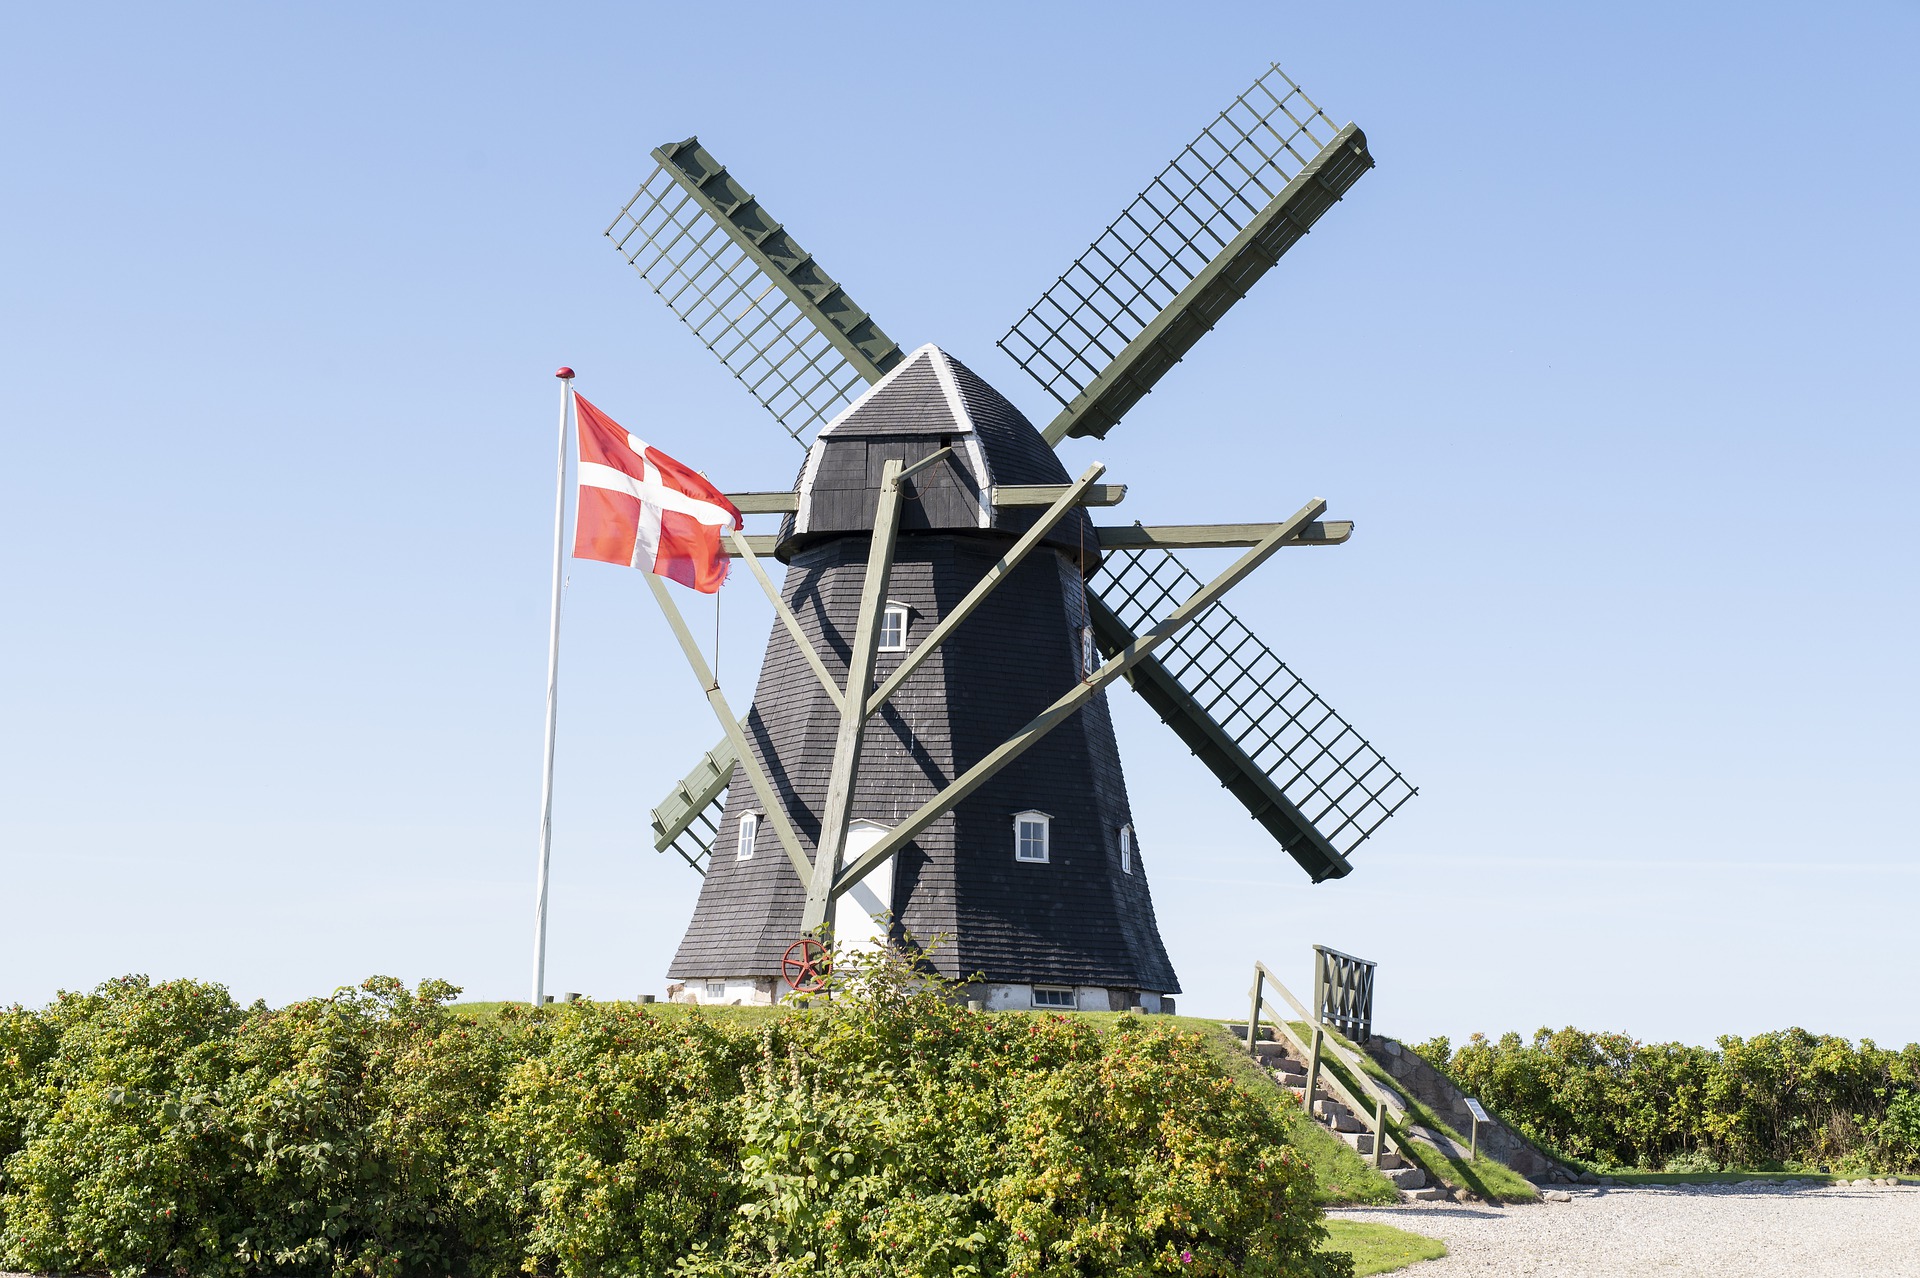 デンマークで風力発電による発電割合が高い理由